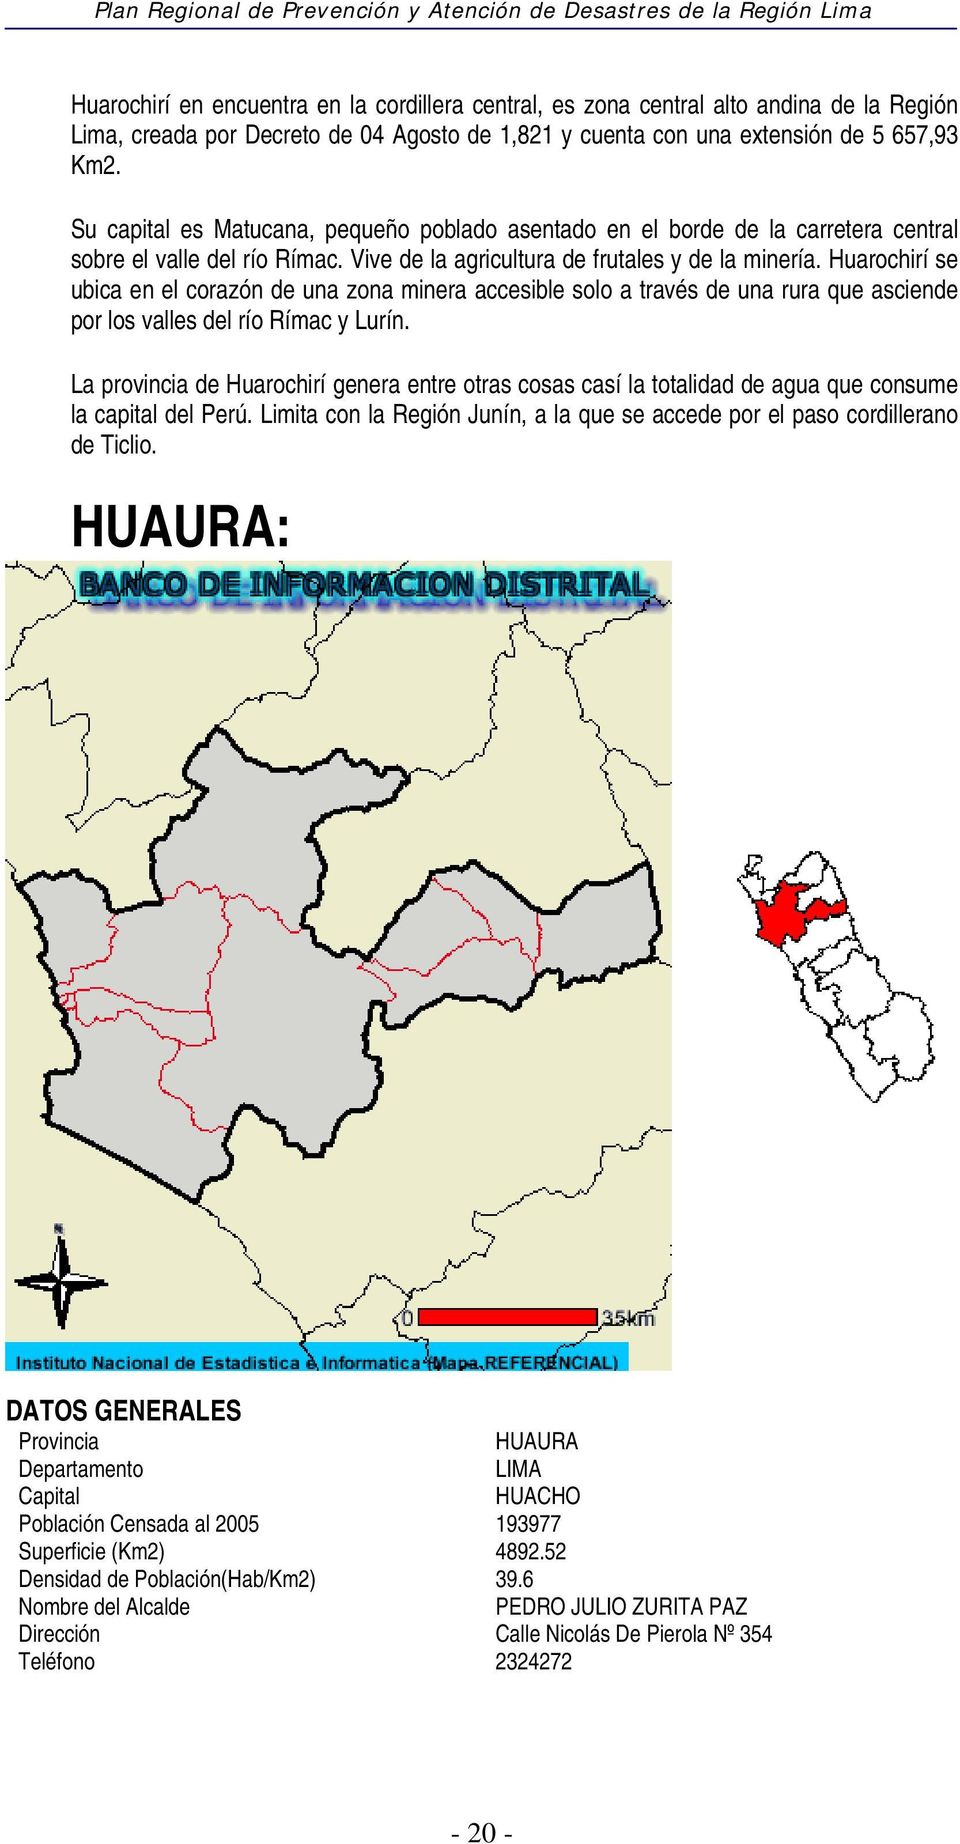 Huarochirí se ubica en el corazón de una zona minera accesible solo a través de una rura que asciende por los valles del río Rímac y Lurín.